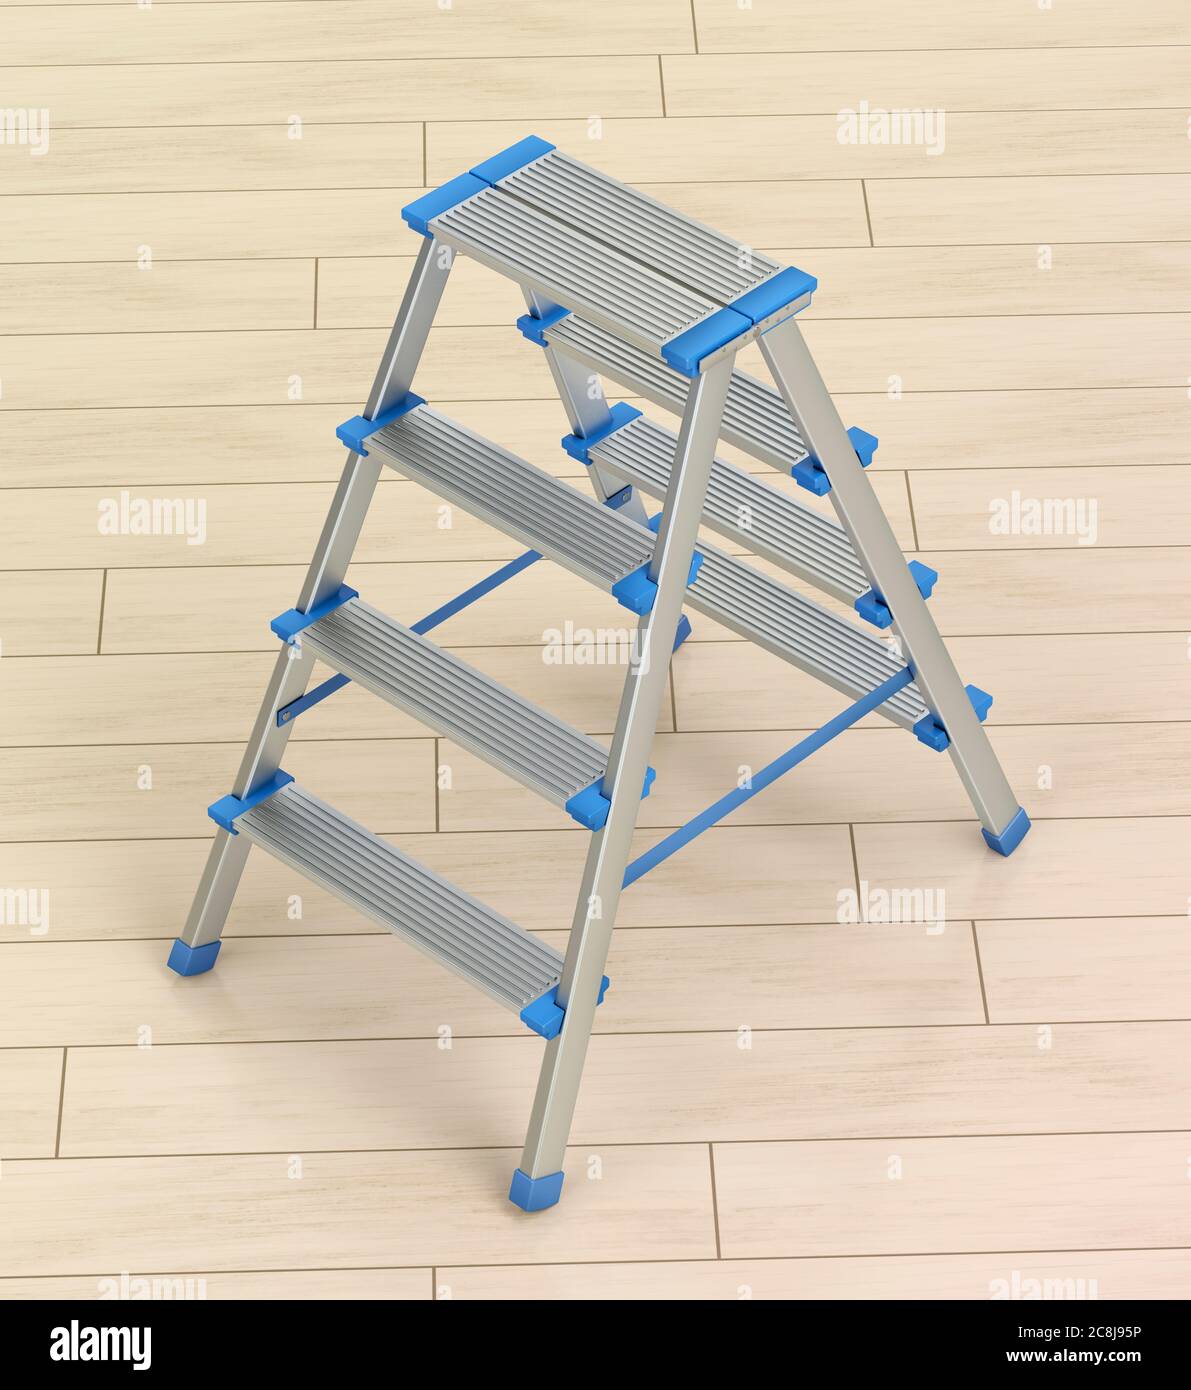 Small aluminum ladder on wooden floor Stock Photo